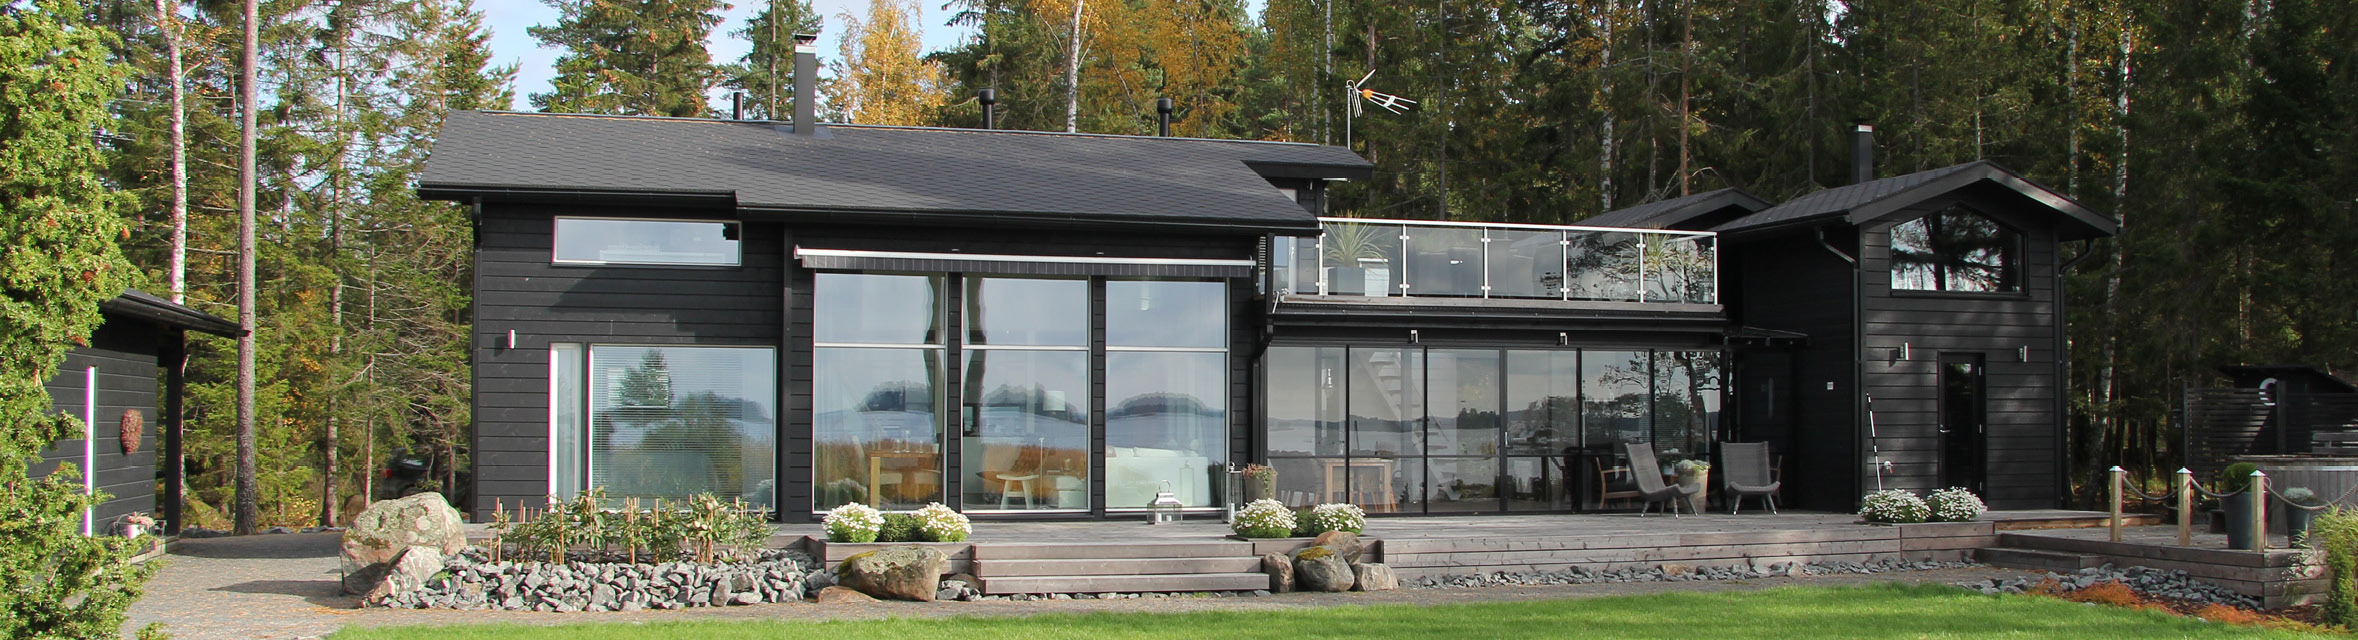 Sunhouse Linjakas talo S355 on Suomen kaunein koti 2017